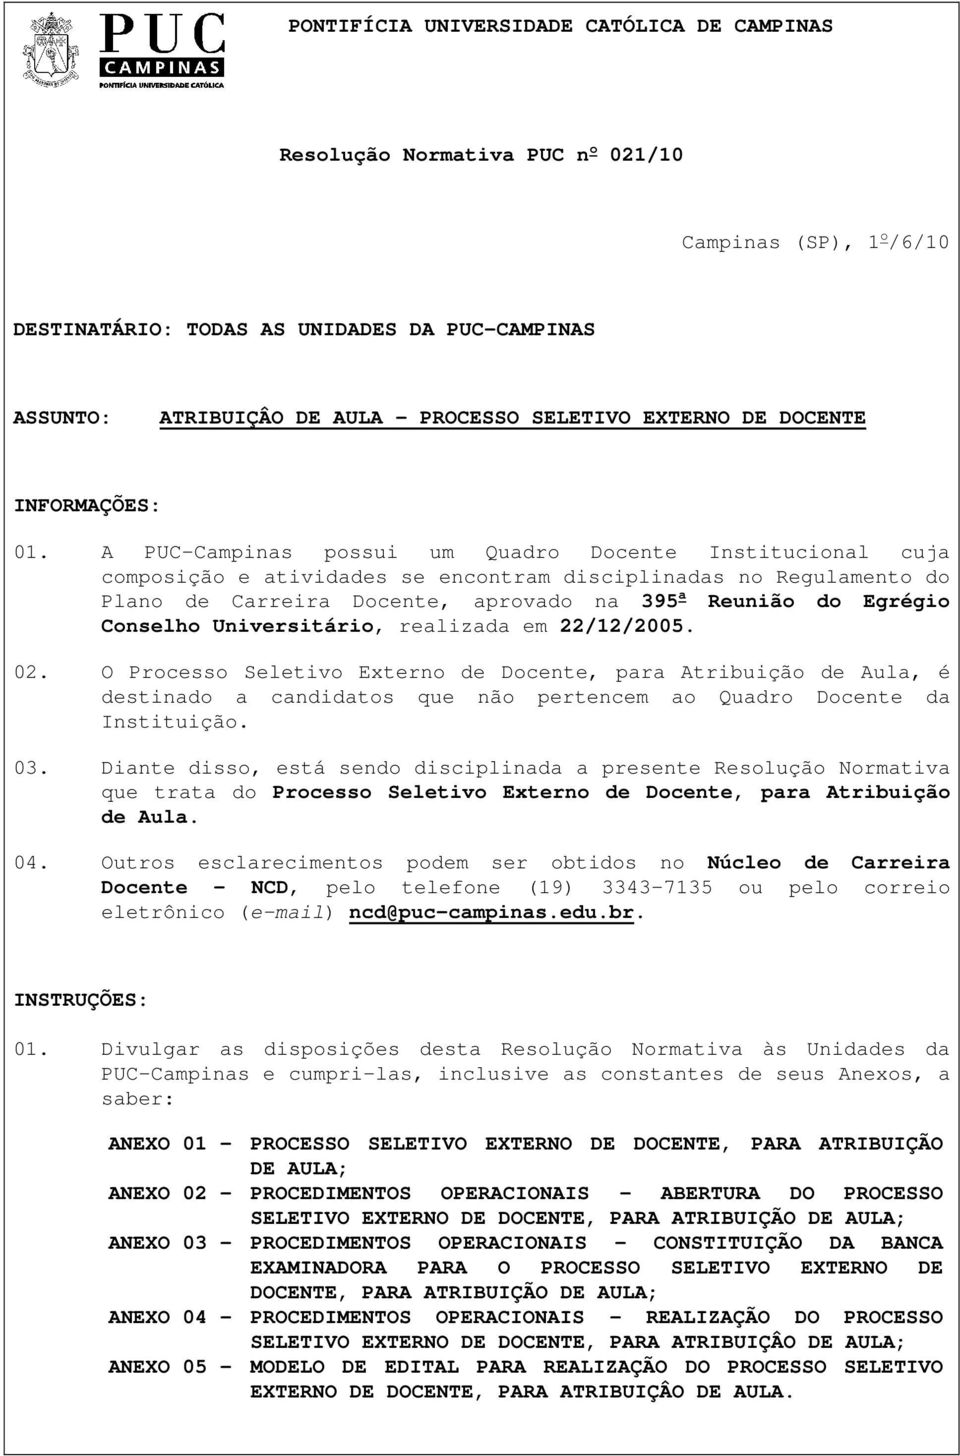 A PUC-Campinas possui um Quadro Docente Institucional cuja composição e atividades se encontram disciplinadas no Regulamento do Plano de Carreira Docente, aprovado na 395 a Reunião do Egrégio